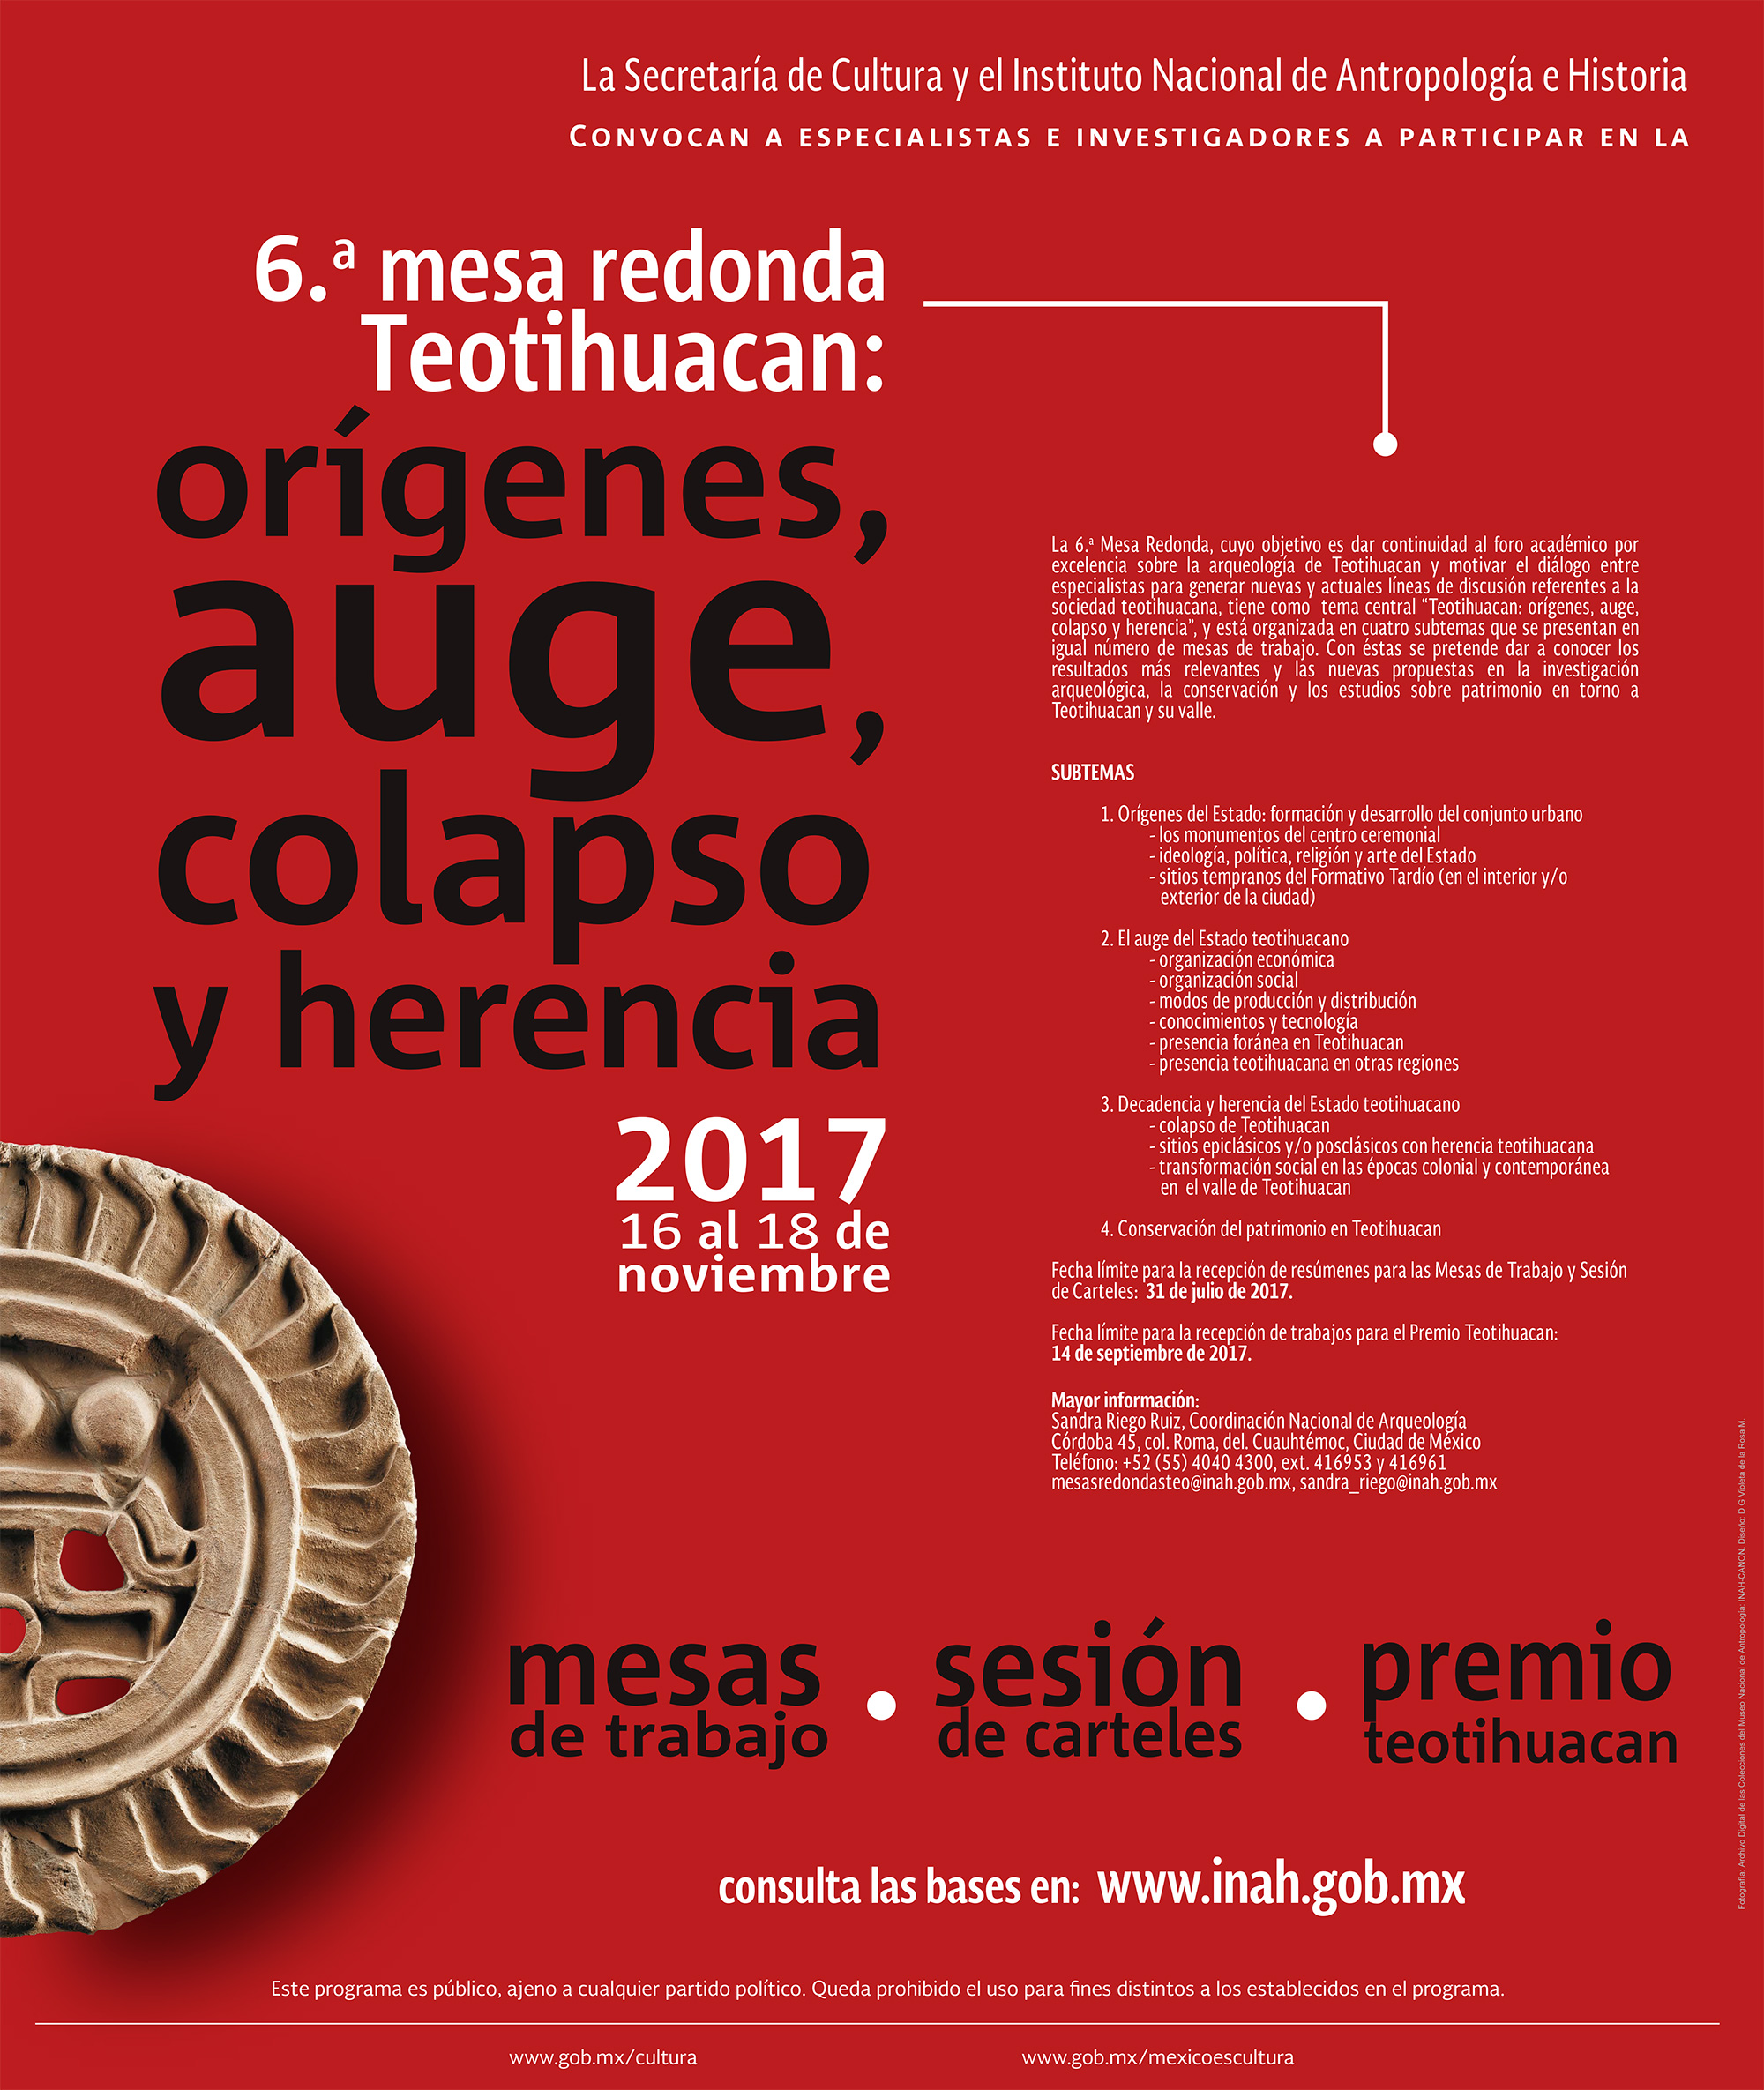 Orígenes, auge, colapso y herencia de Teotihuacan 